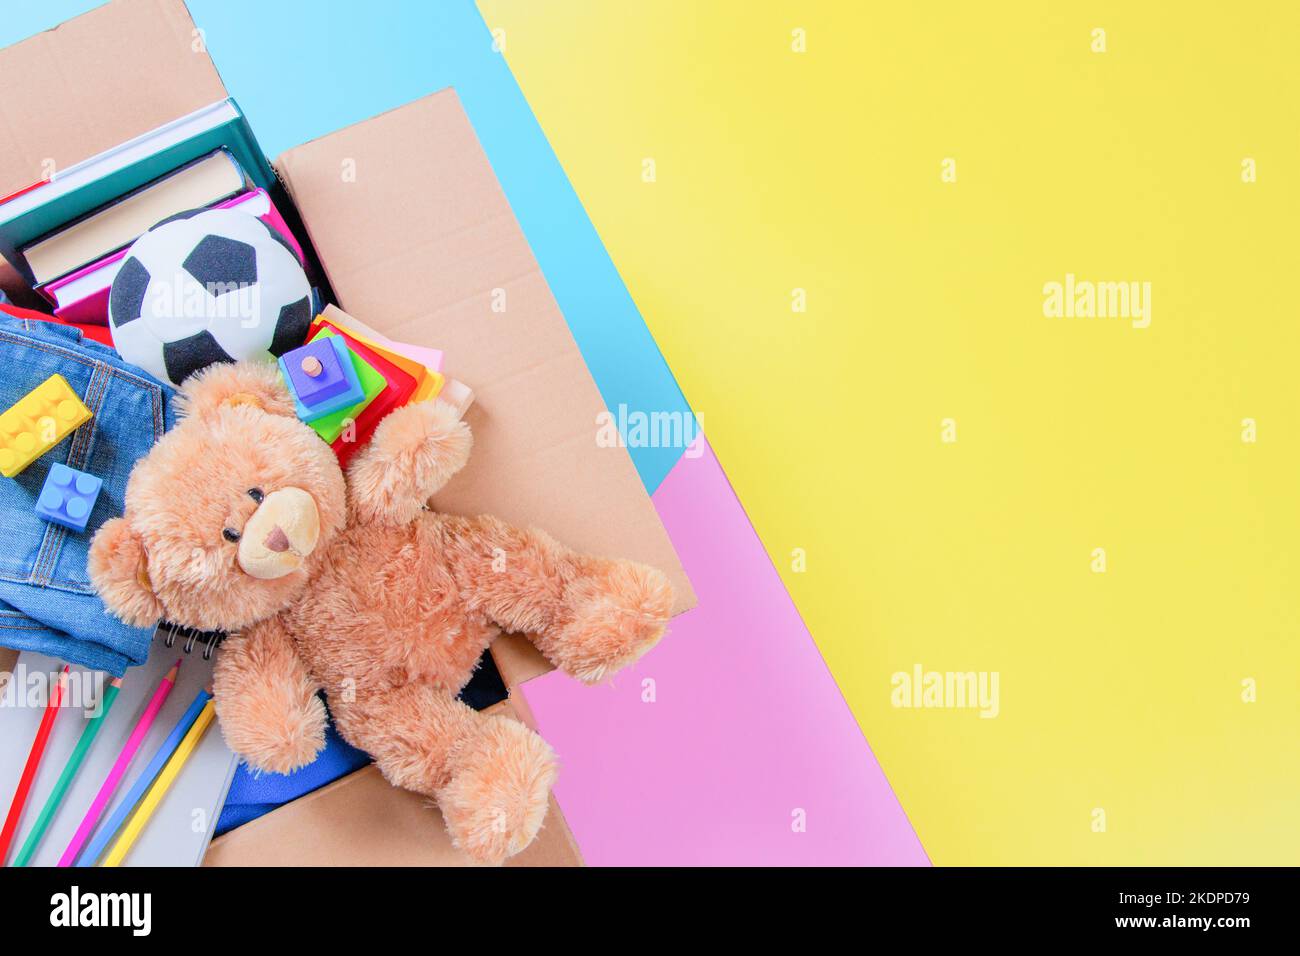 Spendenbox mit Kinderspielzeug, Büchern, Kleidung für wohltätige Zwecke auf buntem Gelb, Rosa, hellblauem Hintergrund. Draufsicht Stockfoto